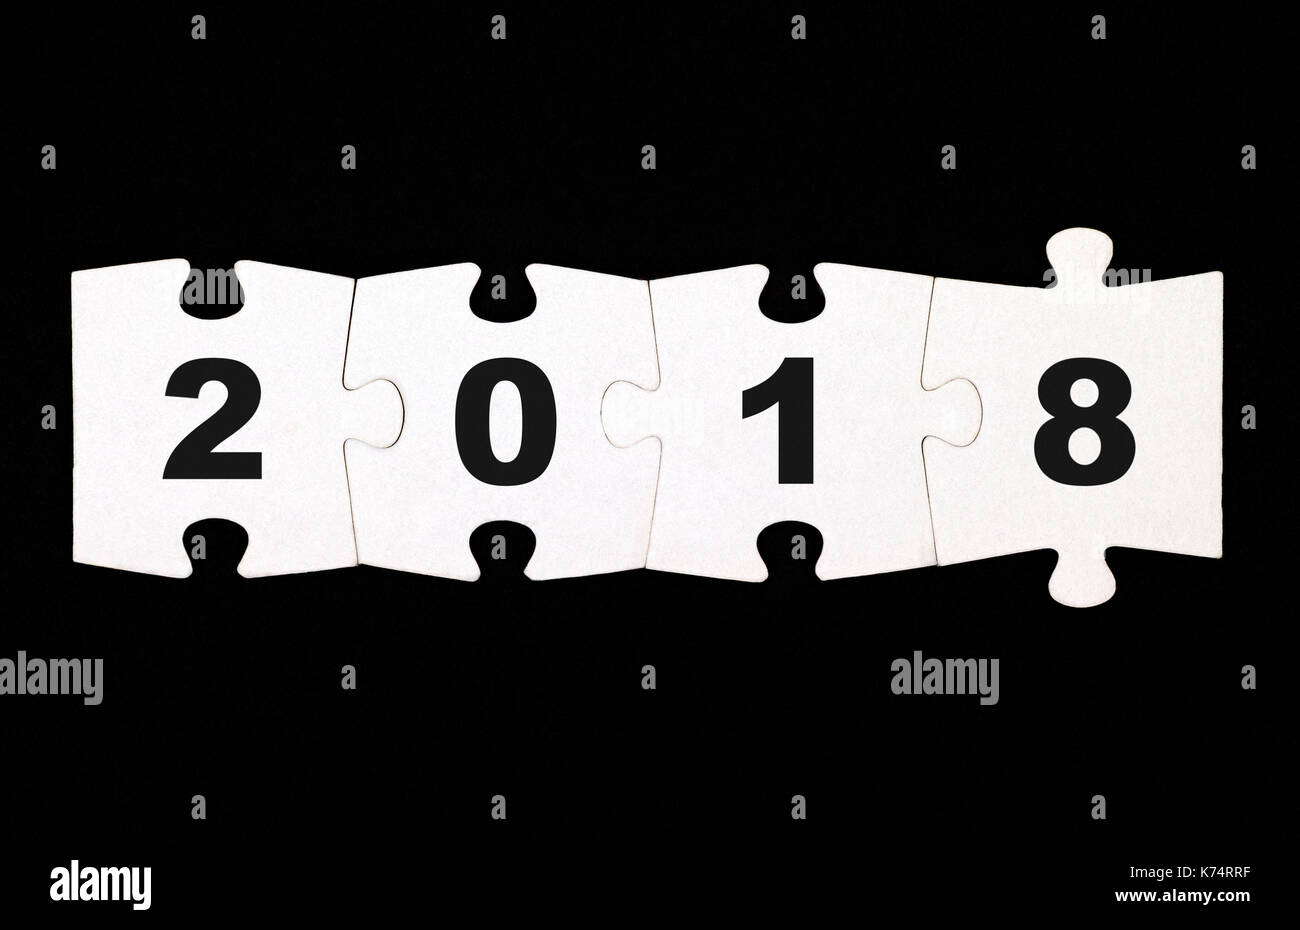 Quattro pezzi di un puzzle con i numeri 2 0 1 8 sono collegati insieme su sfondo nero Foto Stock